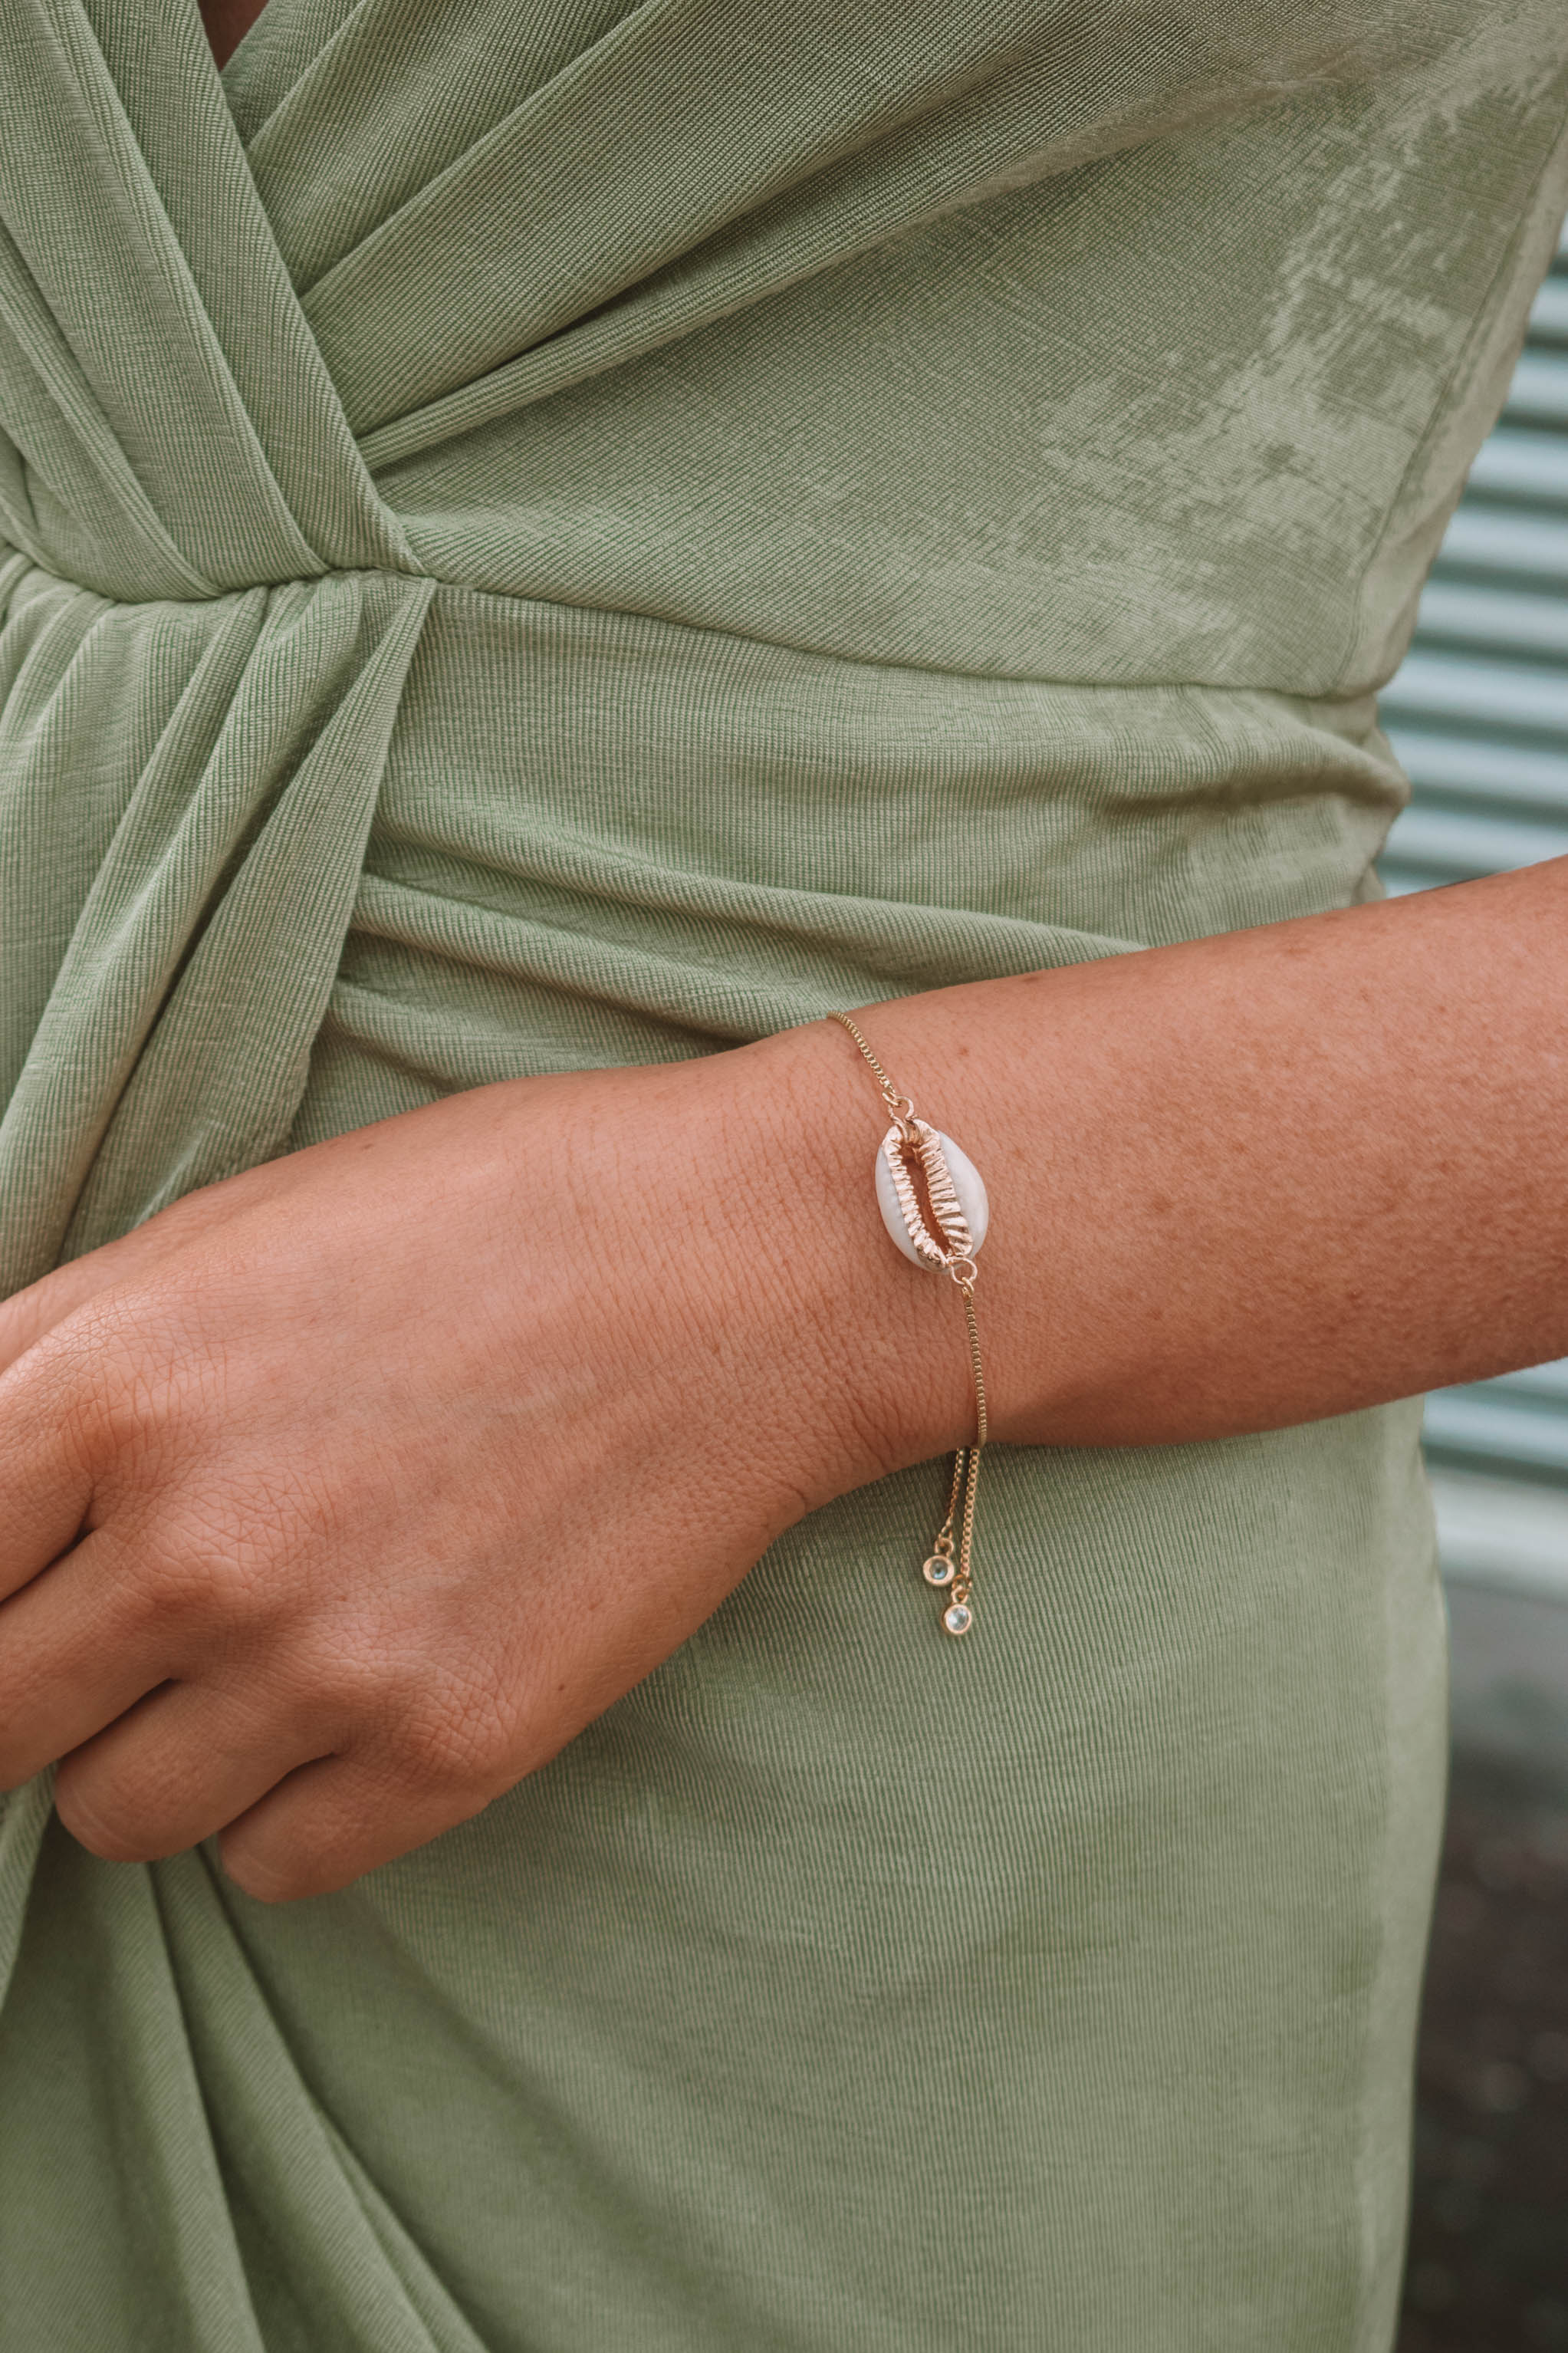 Cowrie Shell Bracelet - Etsy | Shell bracelet, Lava bracelet, Cowrie shell